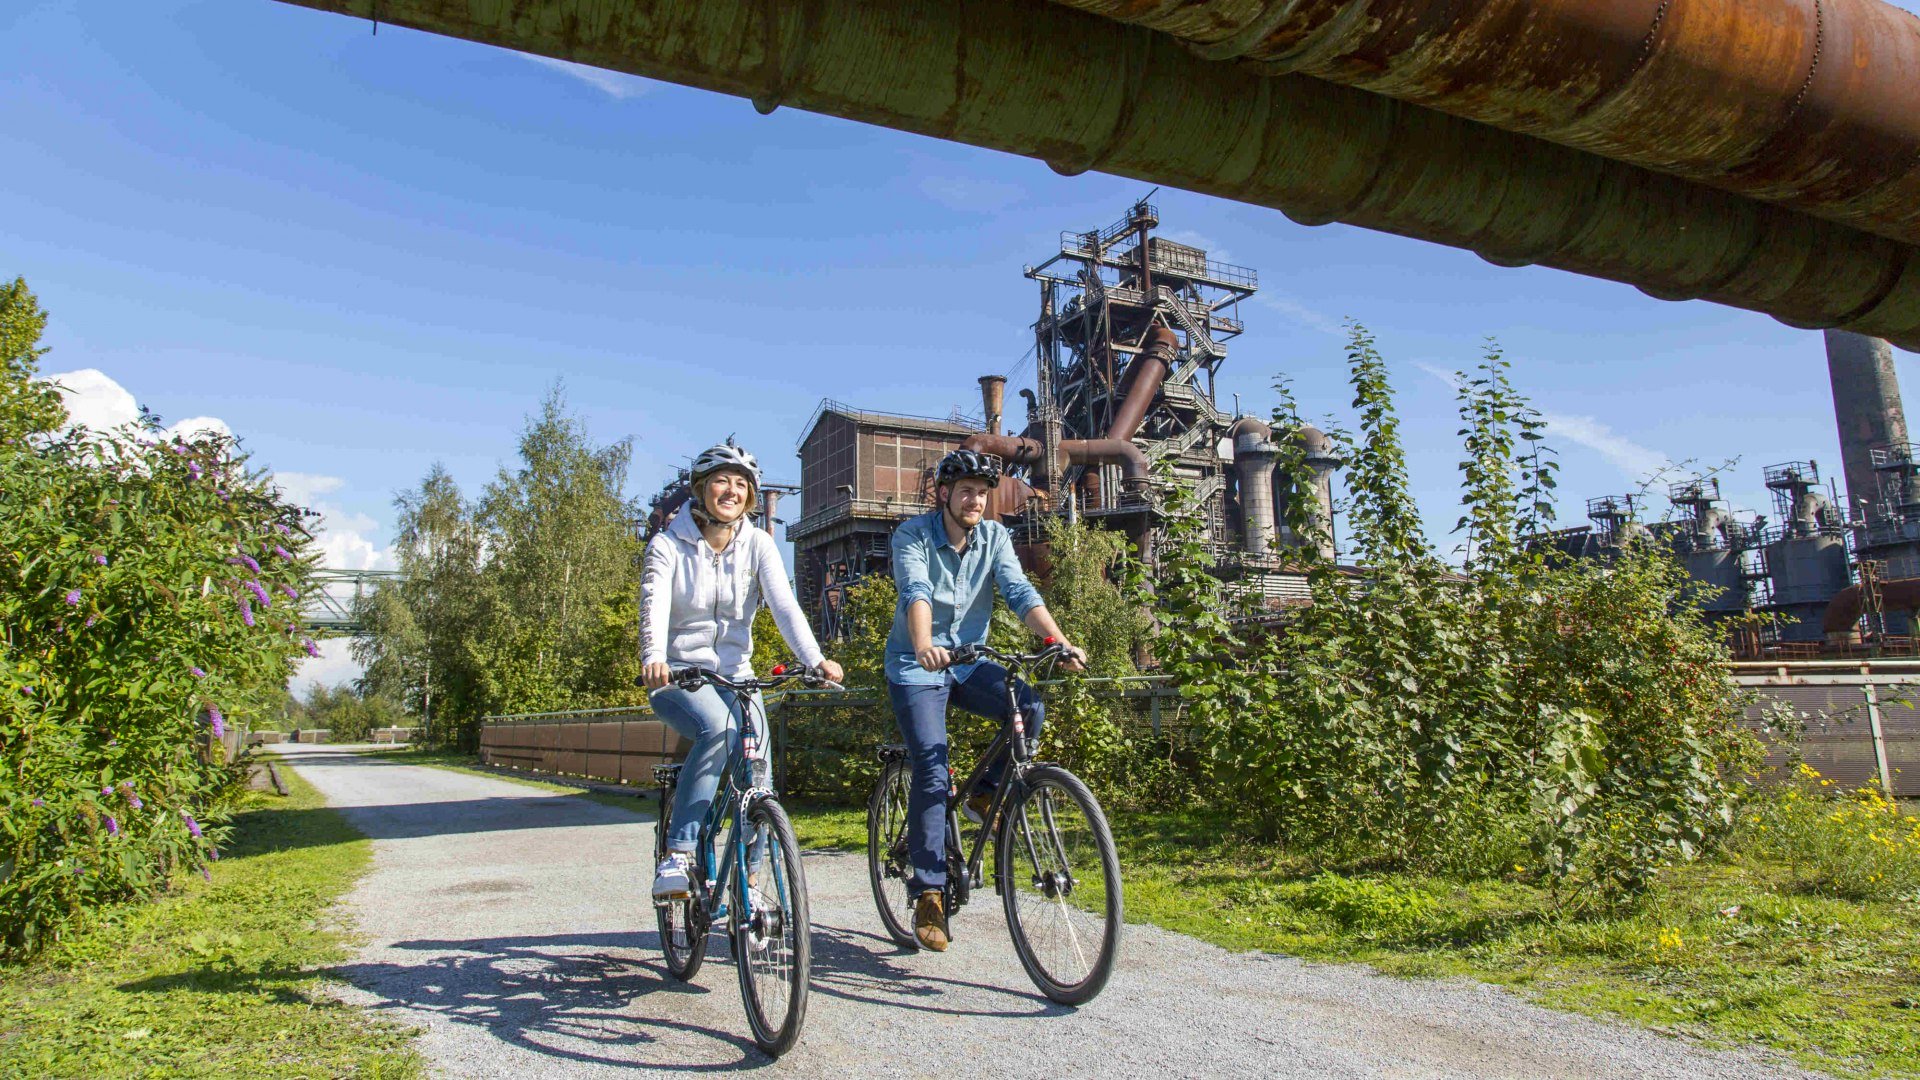 Radfahren im Landschaftspark Duisburg-Nord, © redrevier